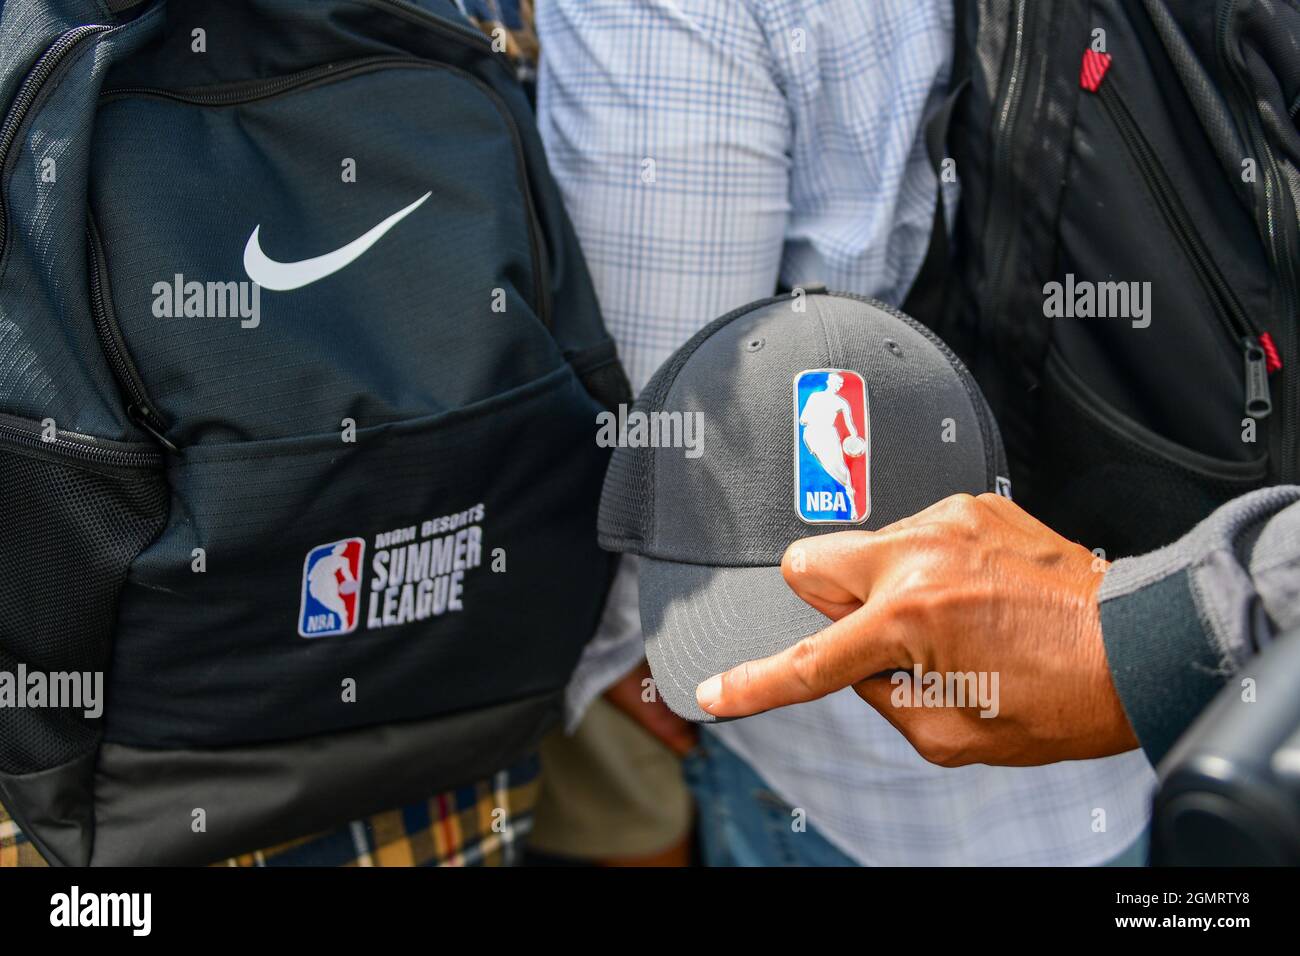 Un fotógrafo lleva un sombrero con el logotipo de la NBA junto a una mochila  Nike bordada con la NBA Summer League durante una ceremonia revolucionaria  para la nueva h Fotografía de